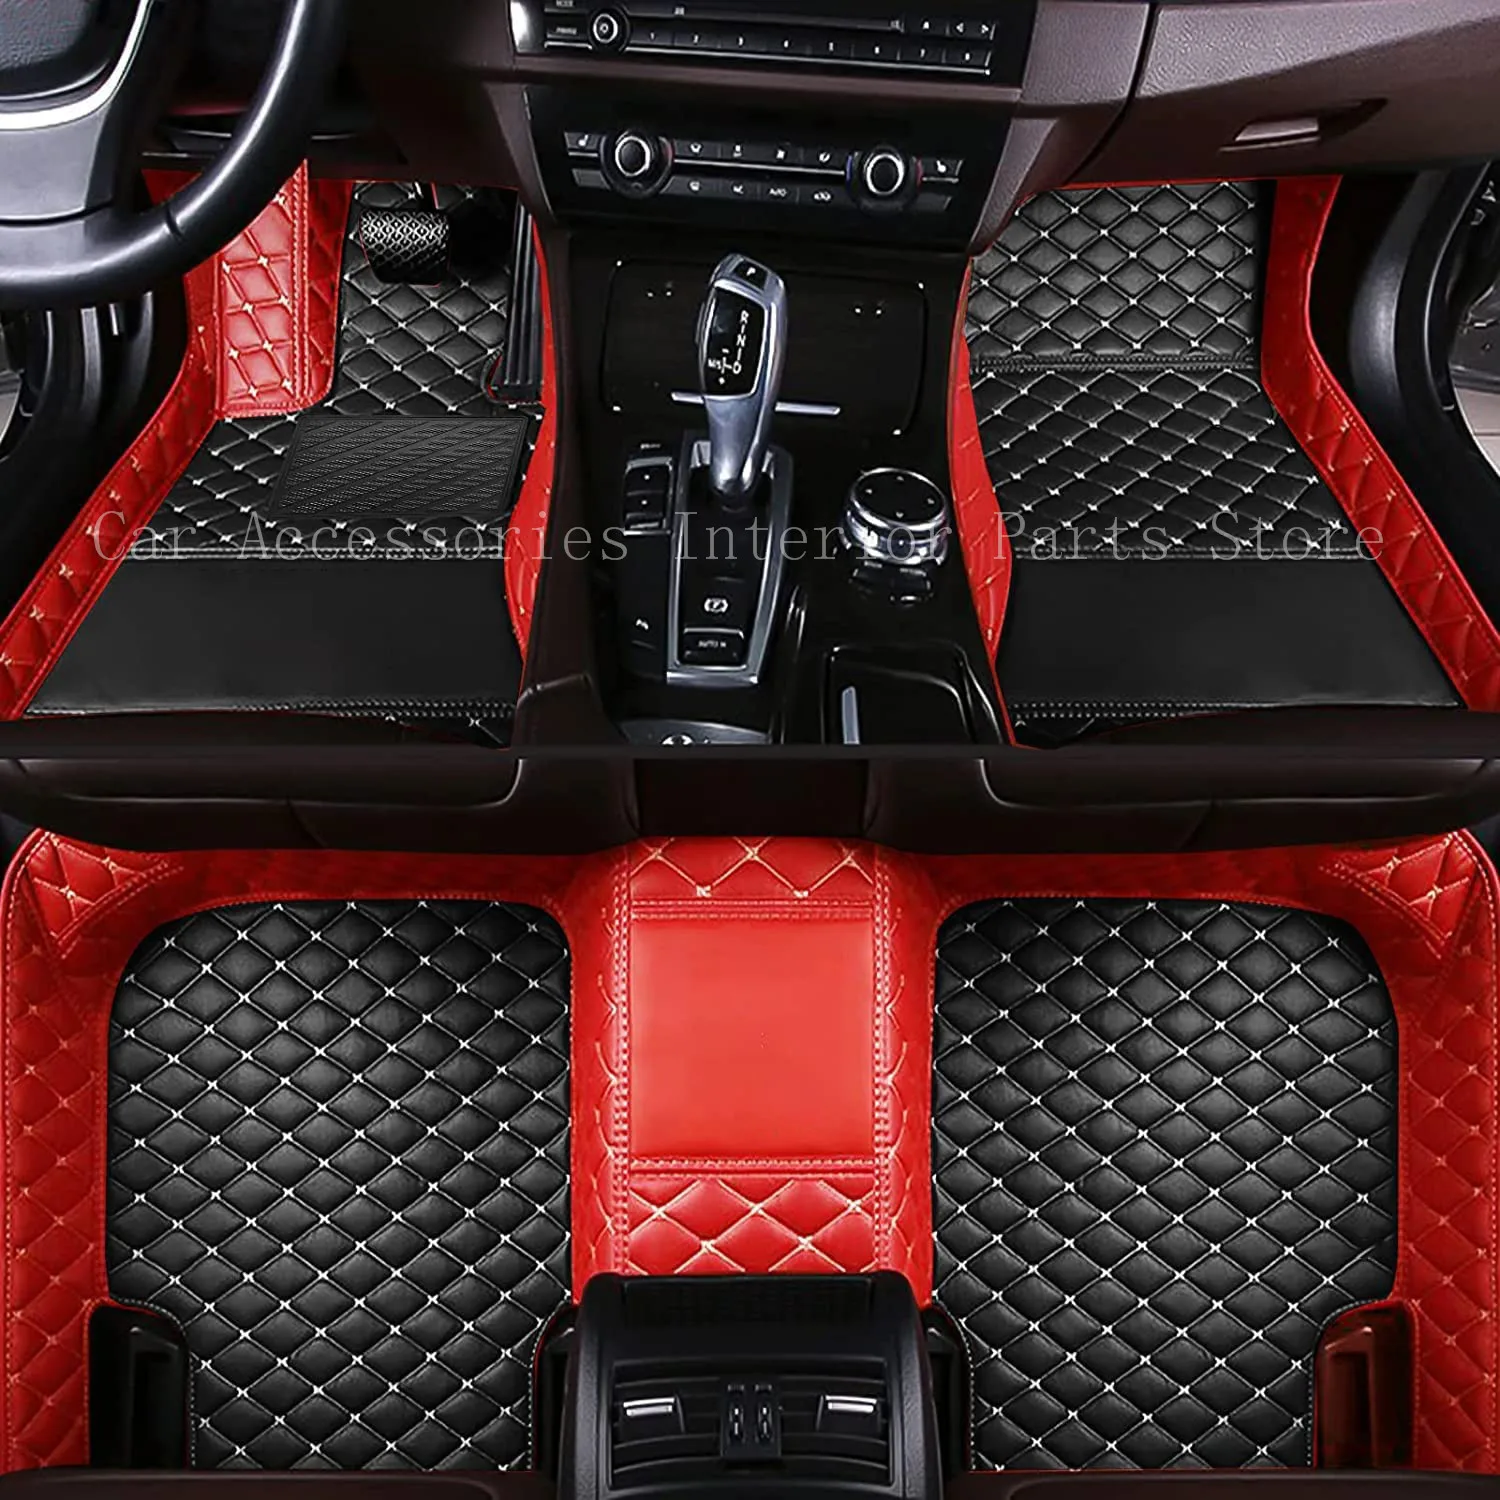 Tapete para carros da Audi E-tron etron 2021 2020 2019 Personalizado Carro Acessórios Peças de Interior Impermeável, Anti-Suja, Tapetes, Tapetes de Carro